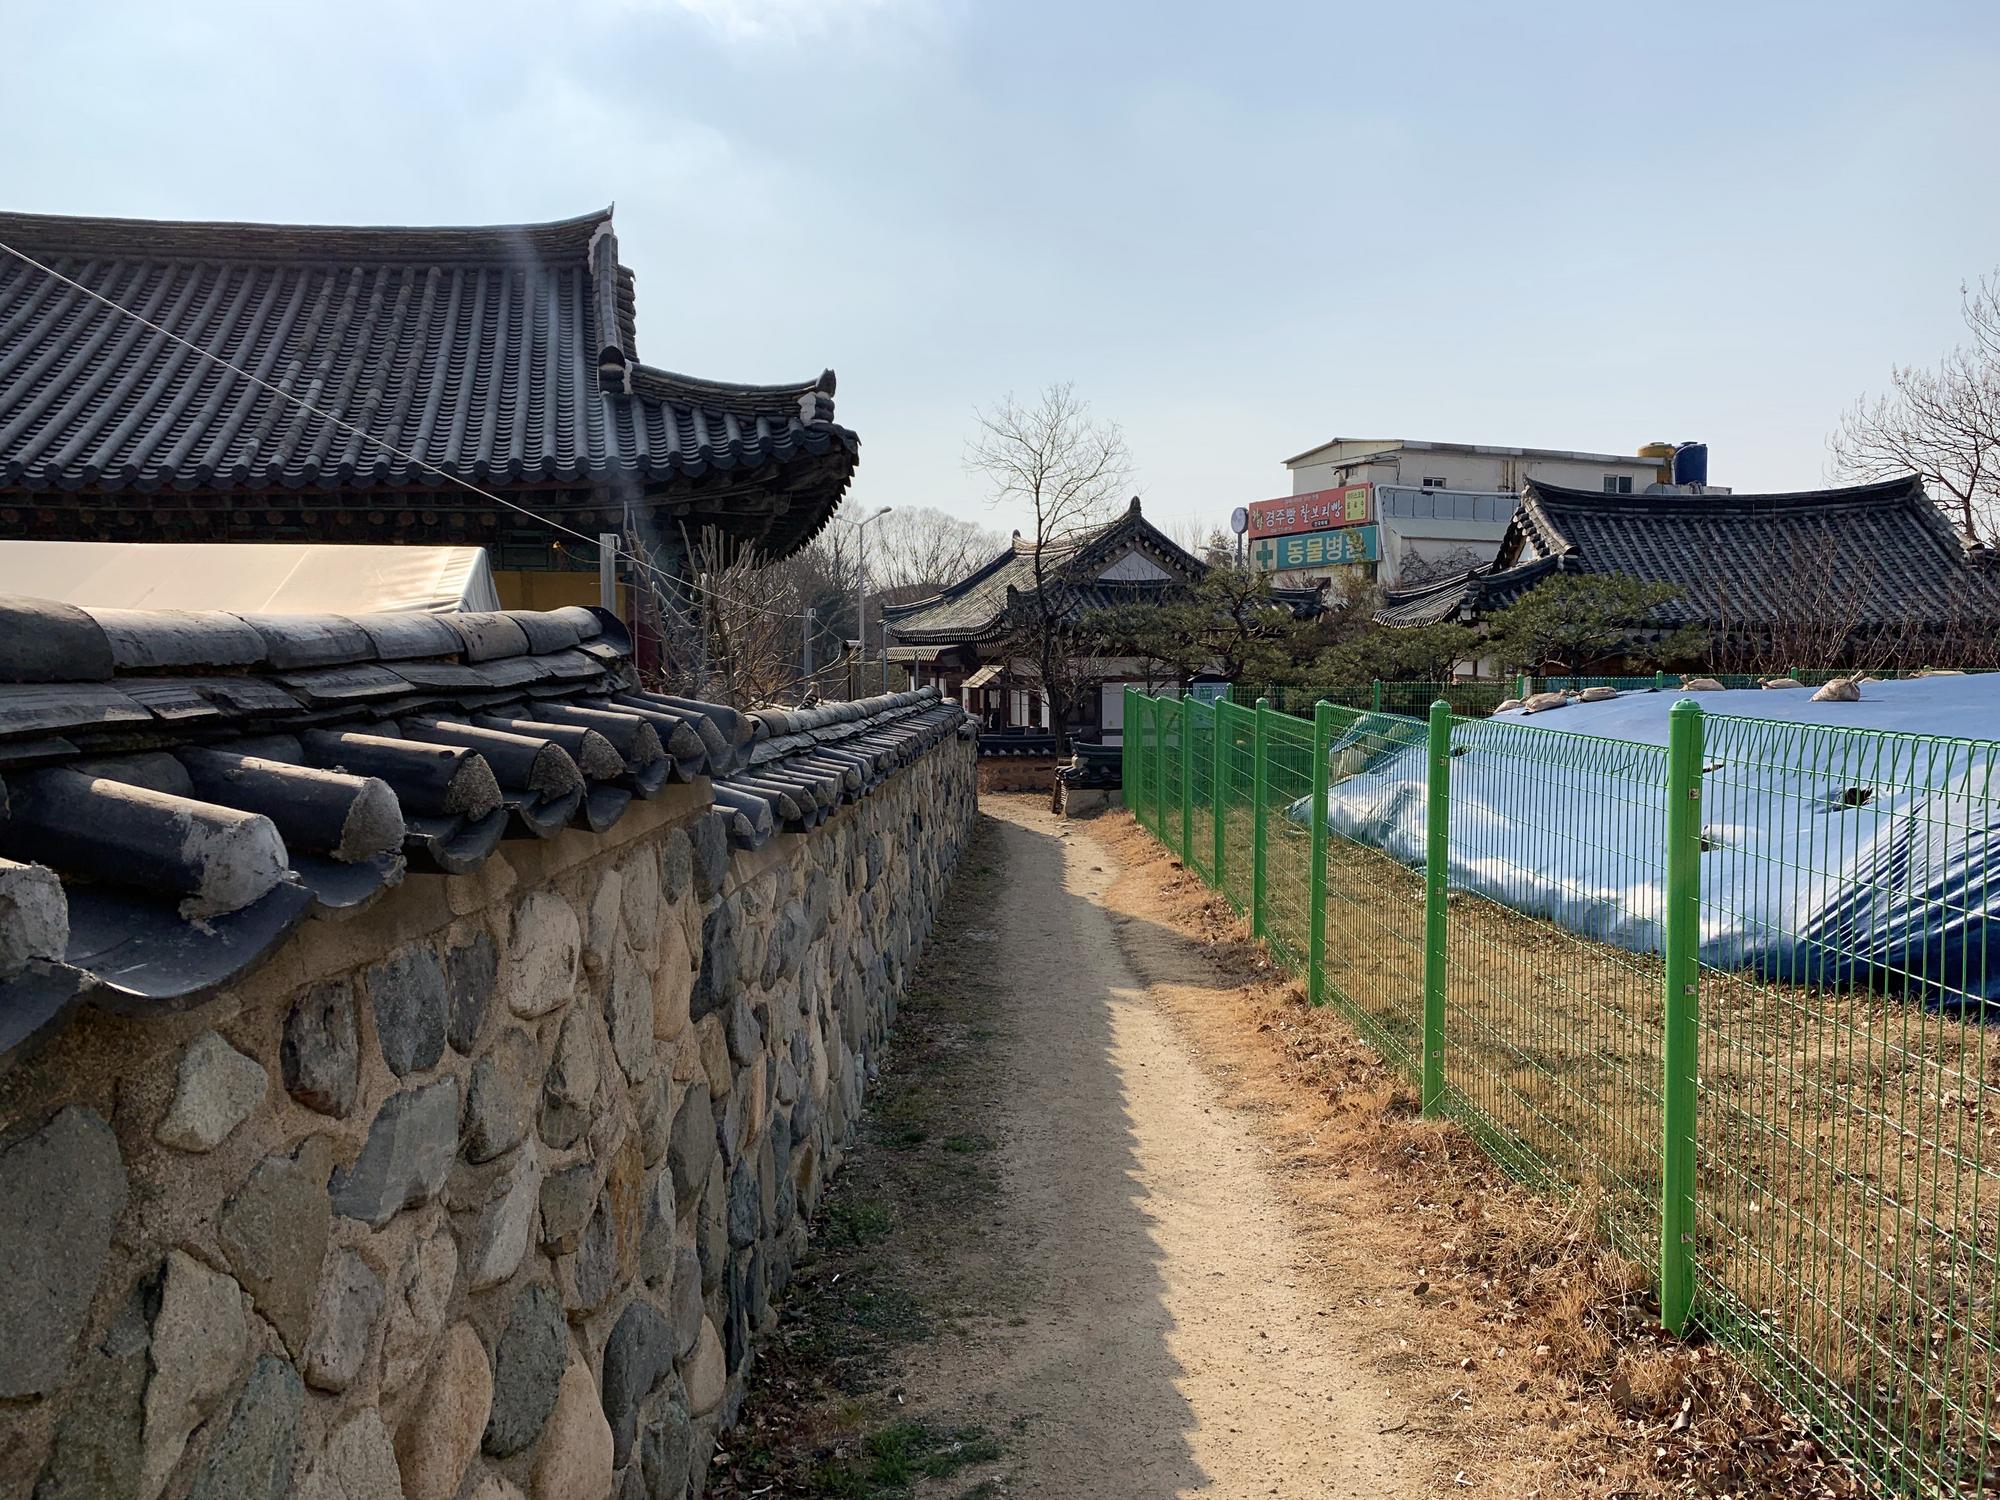 🇰🇷 Кёнджу, Южная Корея, январь 2020.